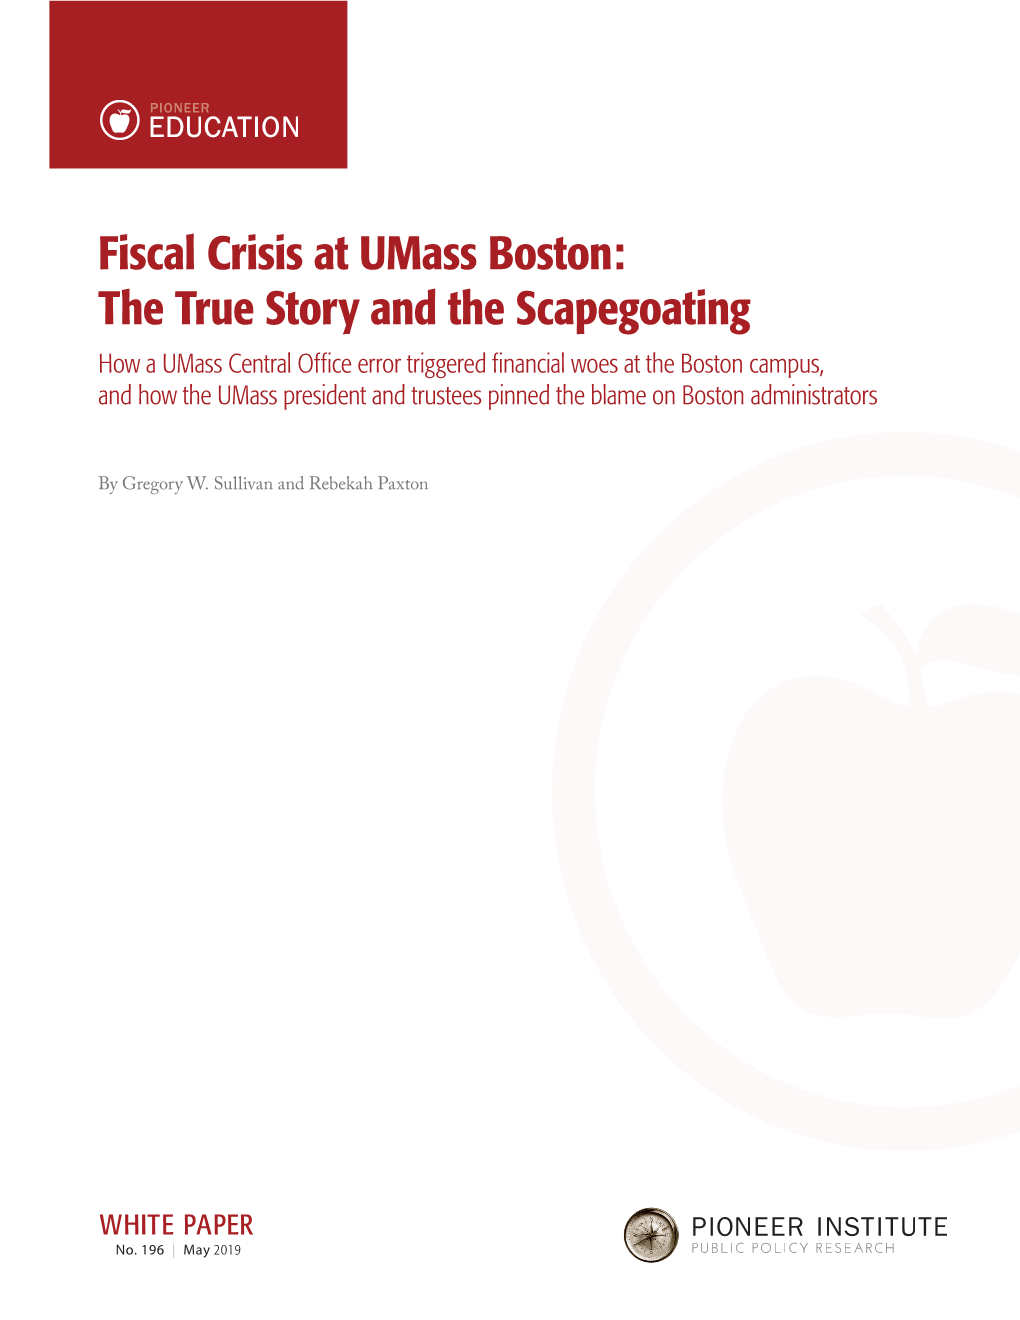 Fiscal Crisis at Umass Boston